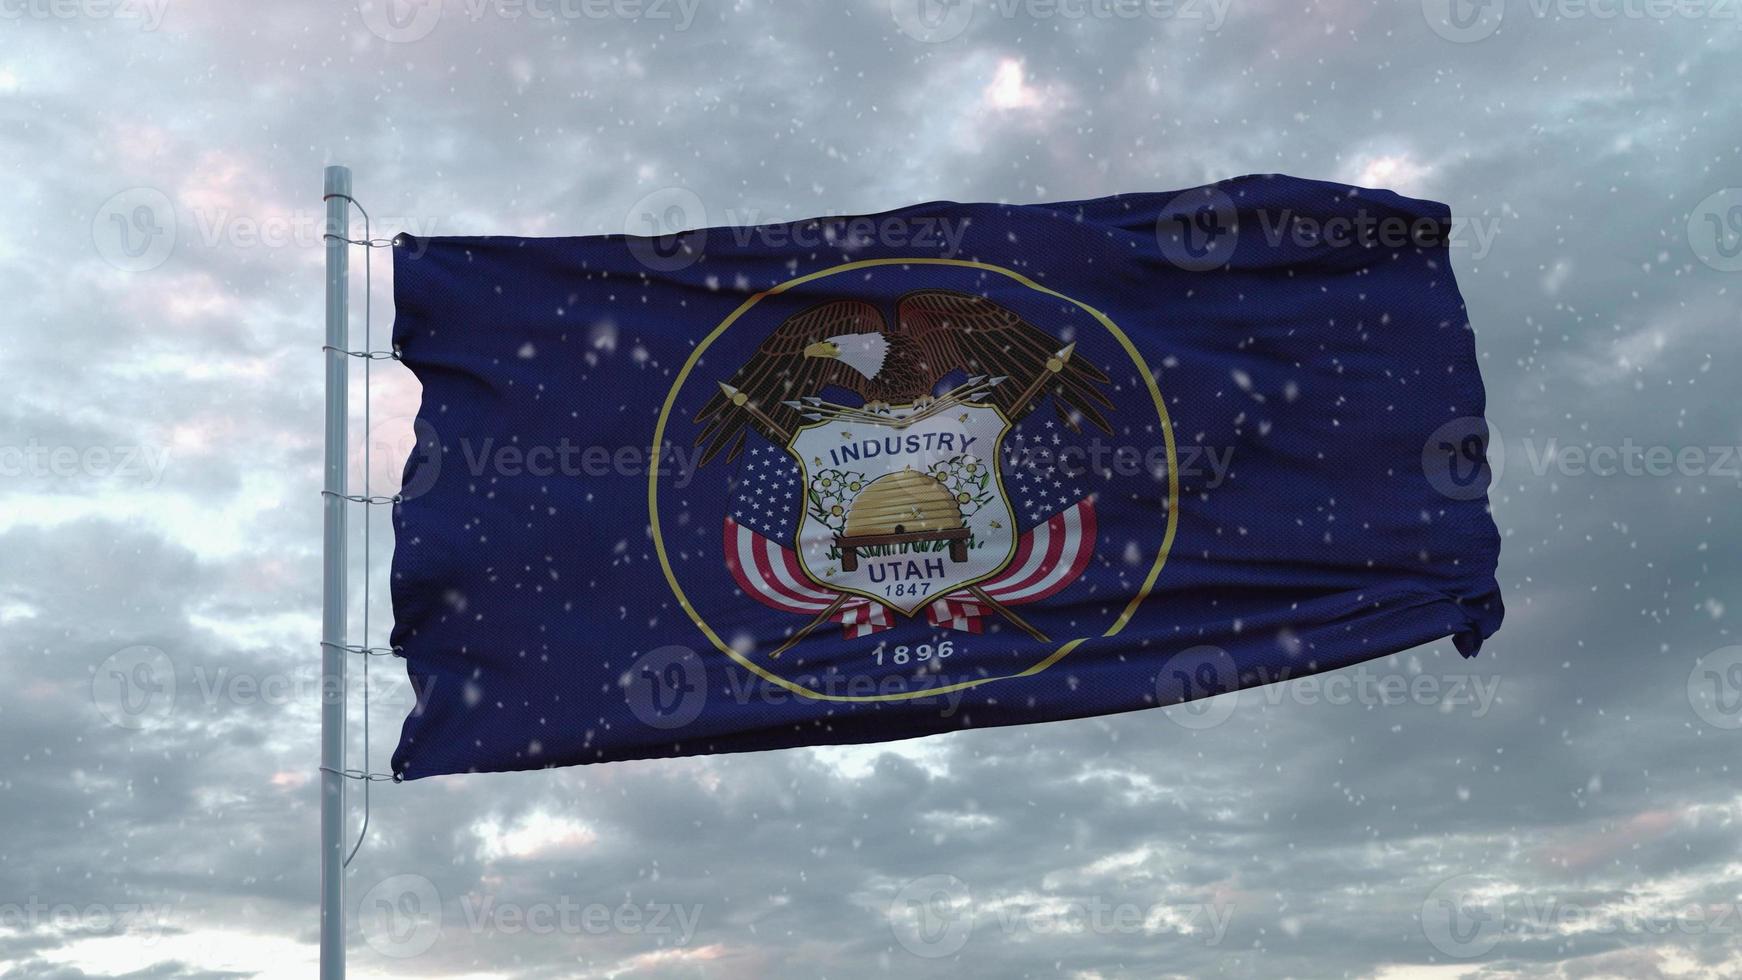 bandiera invernale dello utah con sfondo di fiocchi di neve. Stati Uniti d'America. rendering 3D foto